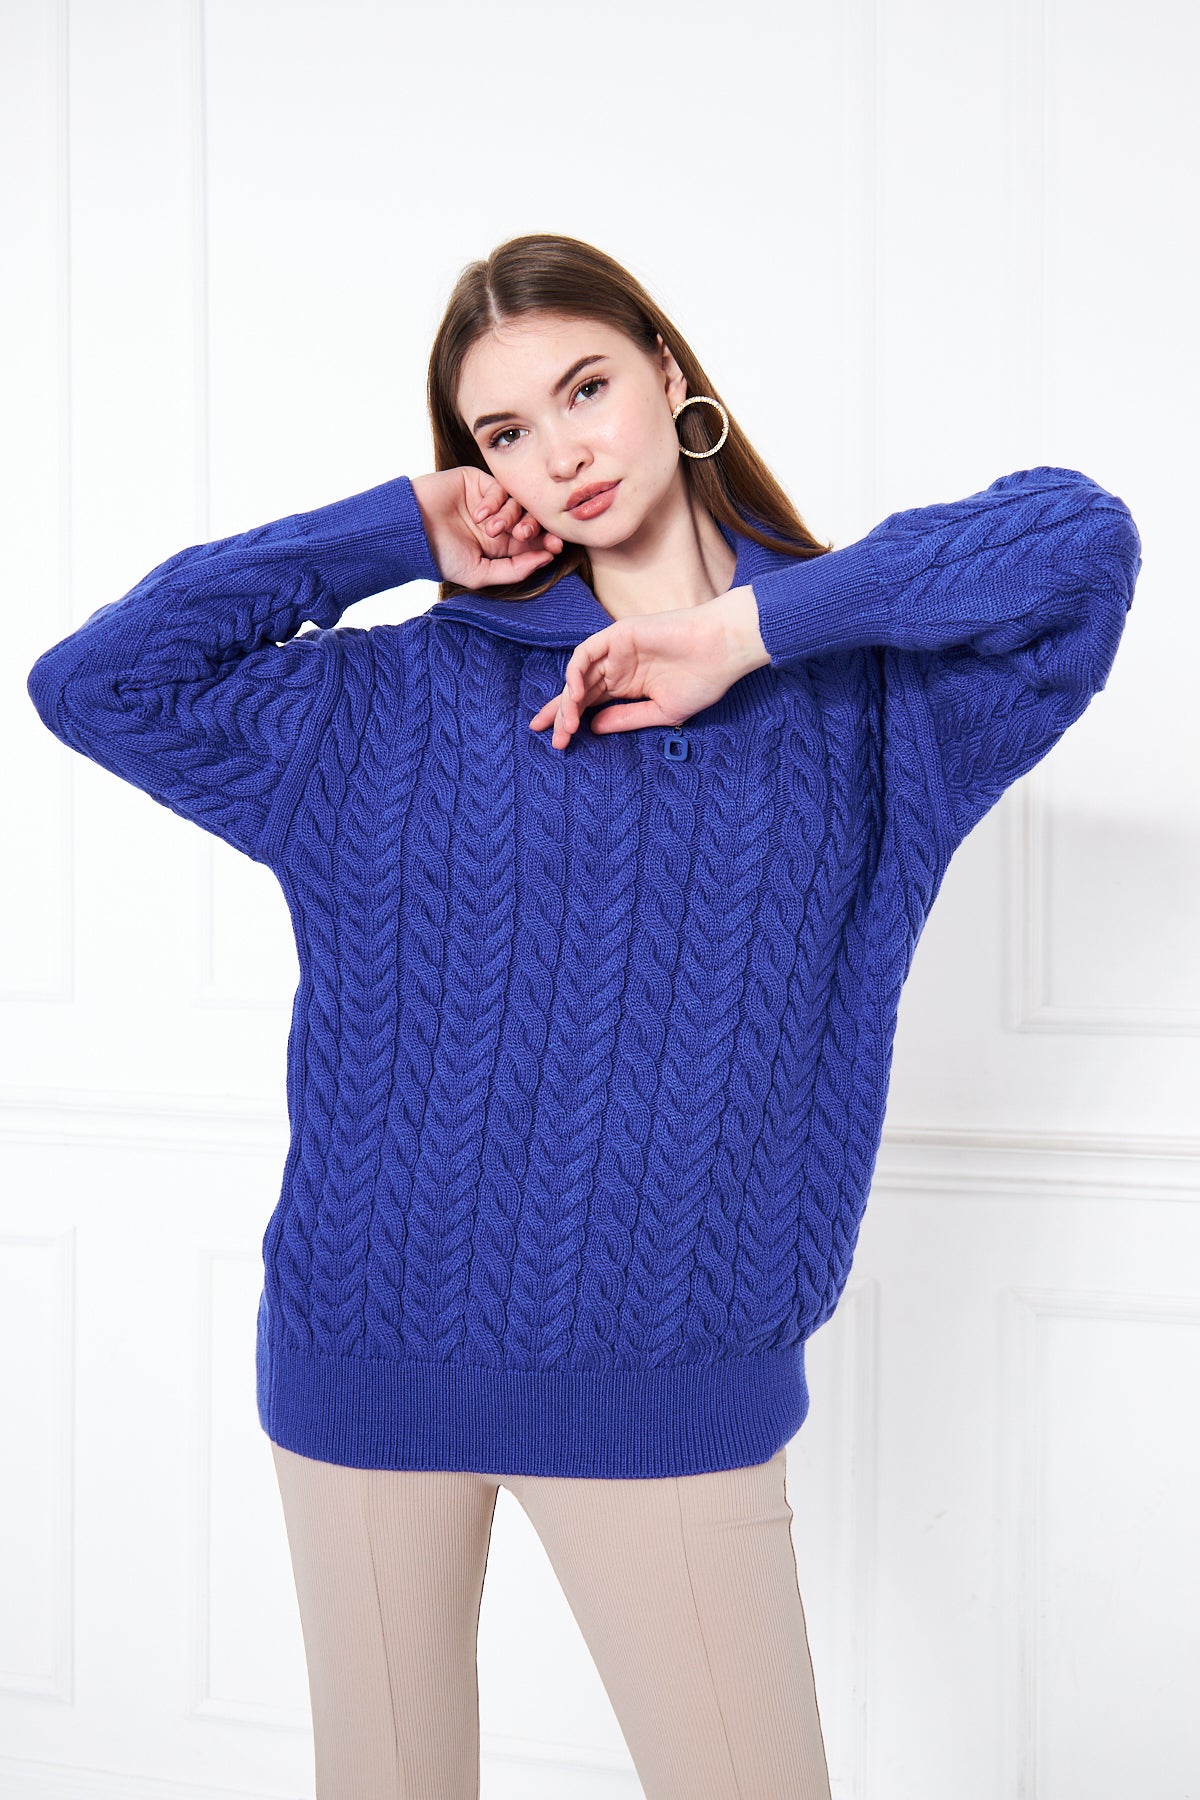 Volia Zipper Cable Sweater